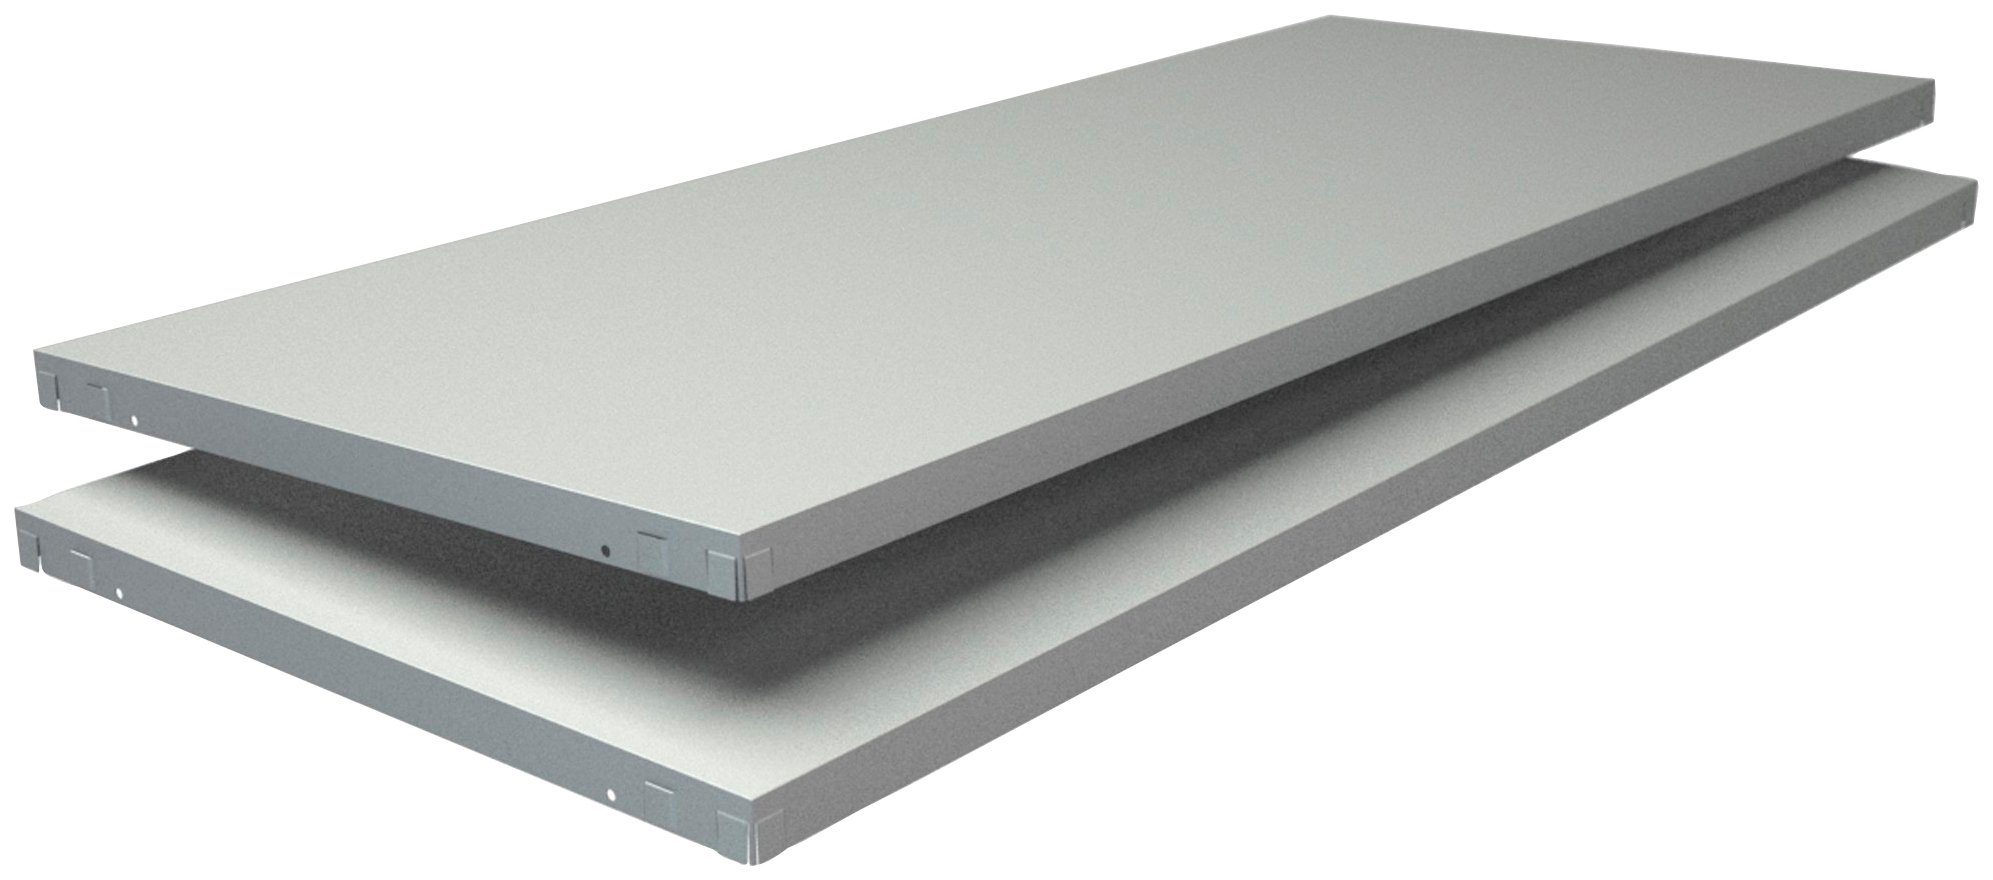 SCHULTE Regalwelt Regalelement Stecksystem-Fachboden PowerMax, 2 Stück weiß, 1200x500 mm